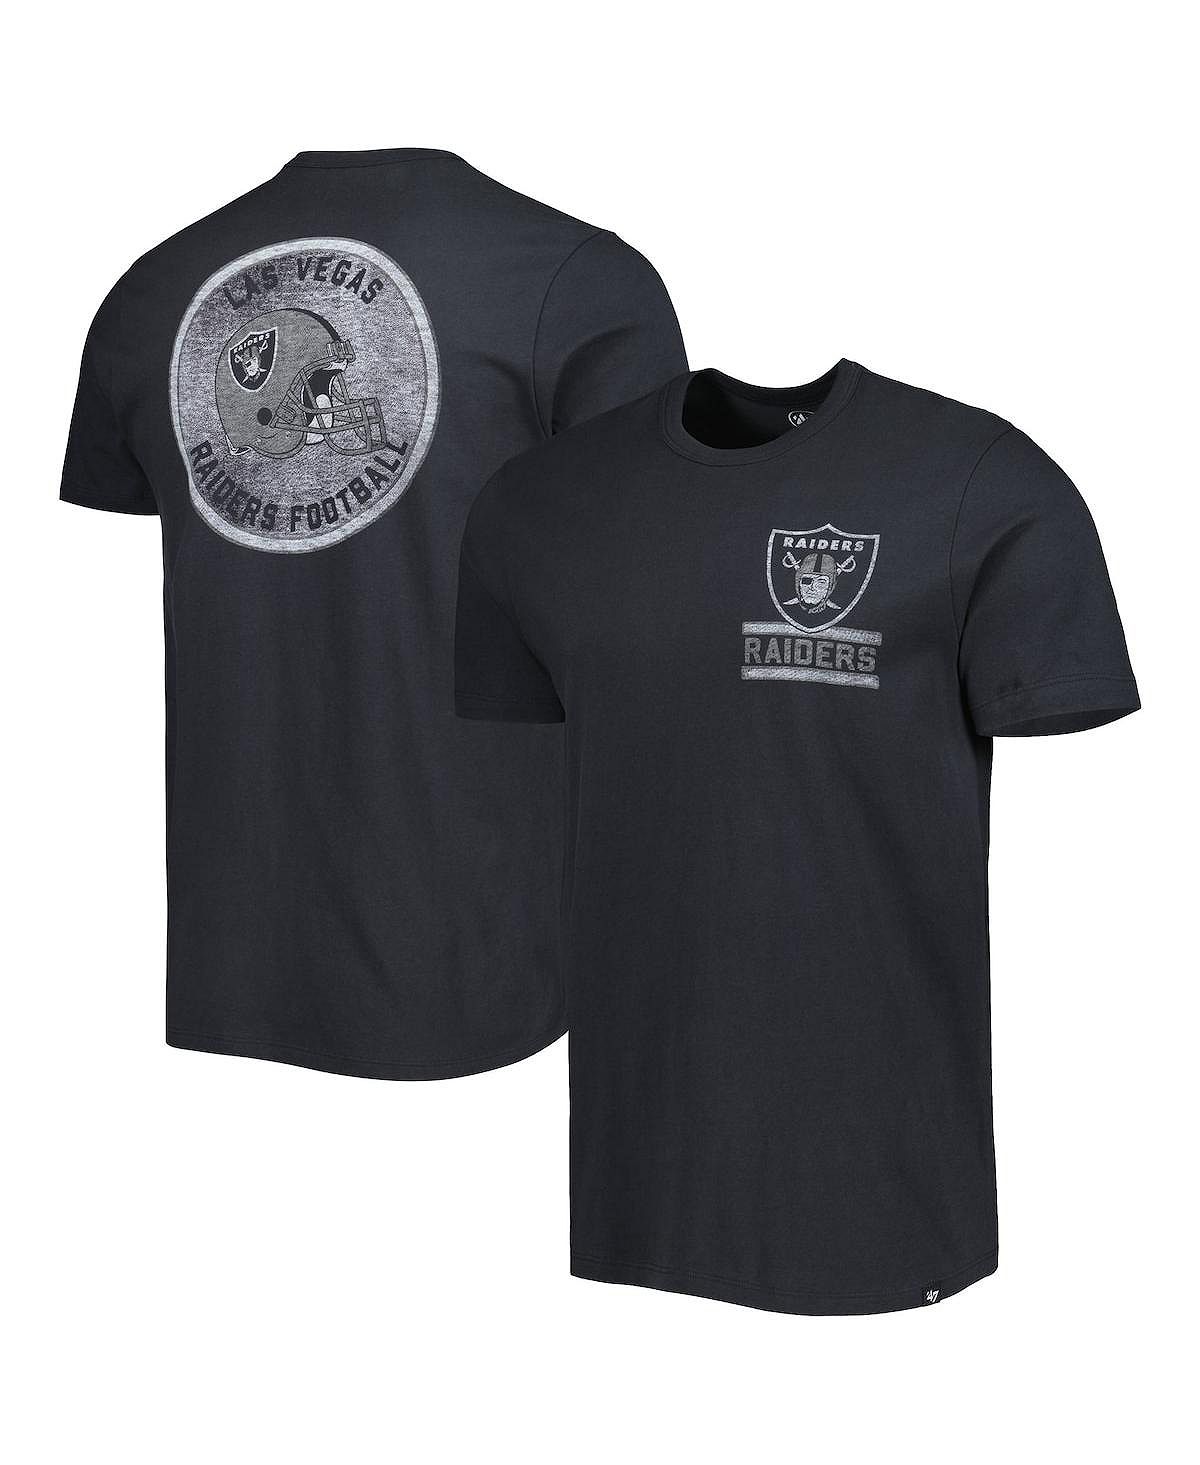 мужская серо черная футболка с капюшоном las vegas raiders franklin wooster с длинными рукавами и меланжевым принтом 47 brand мульти Мужская черная футболка Las Vegas Raiders Open Field Franklin '47 Brand